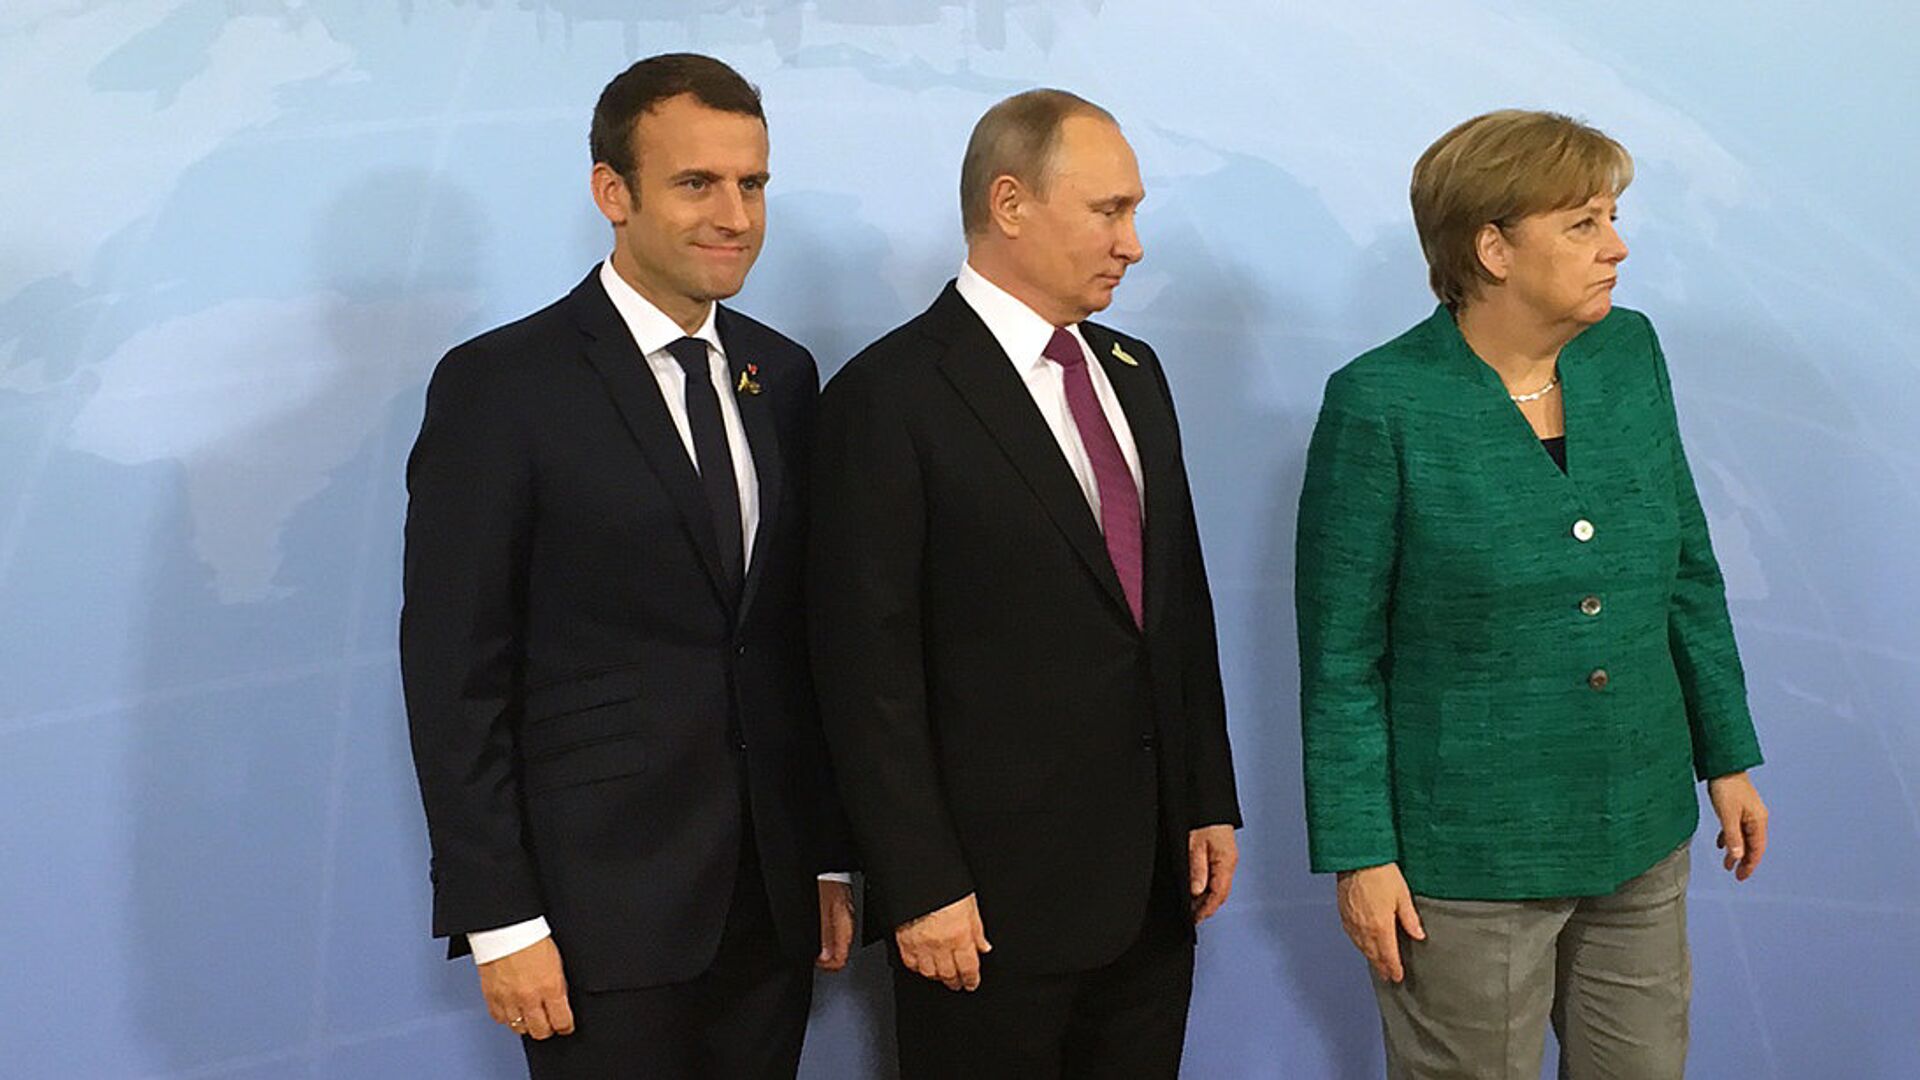 Президент России Владимир Путин, канцлер ФРГ Ангела Меркель и президент Франции Эммануэль Макрон во время встречи на саммите G20 в Гамбурге. 8 июля 2017 - ИноСМИ, 1920, 10.02.2021